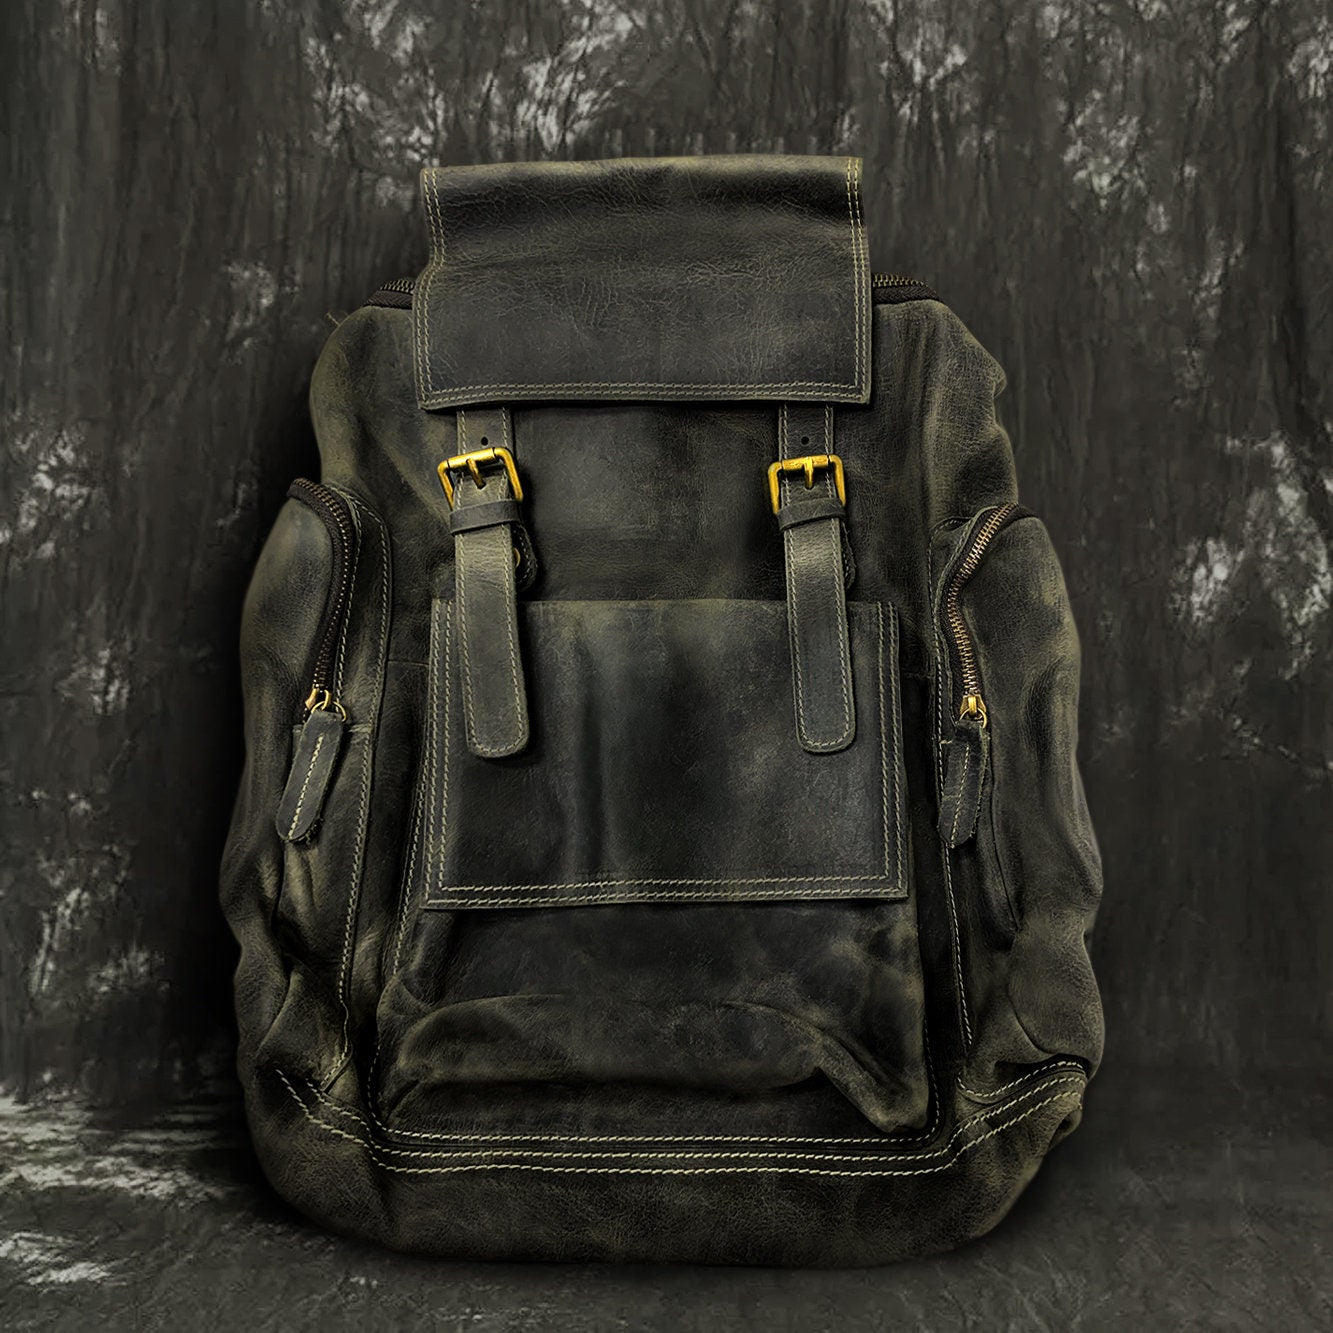 Engraved Leather Backpack Bag